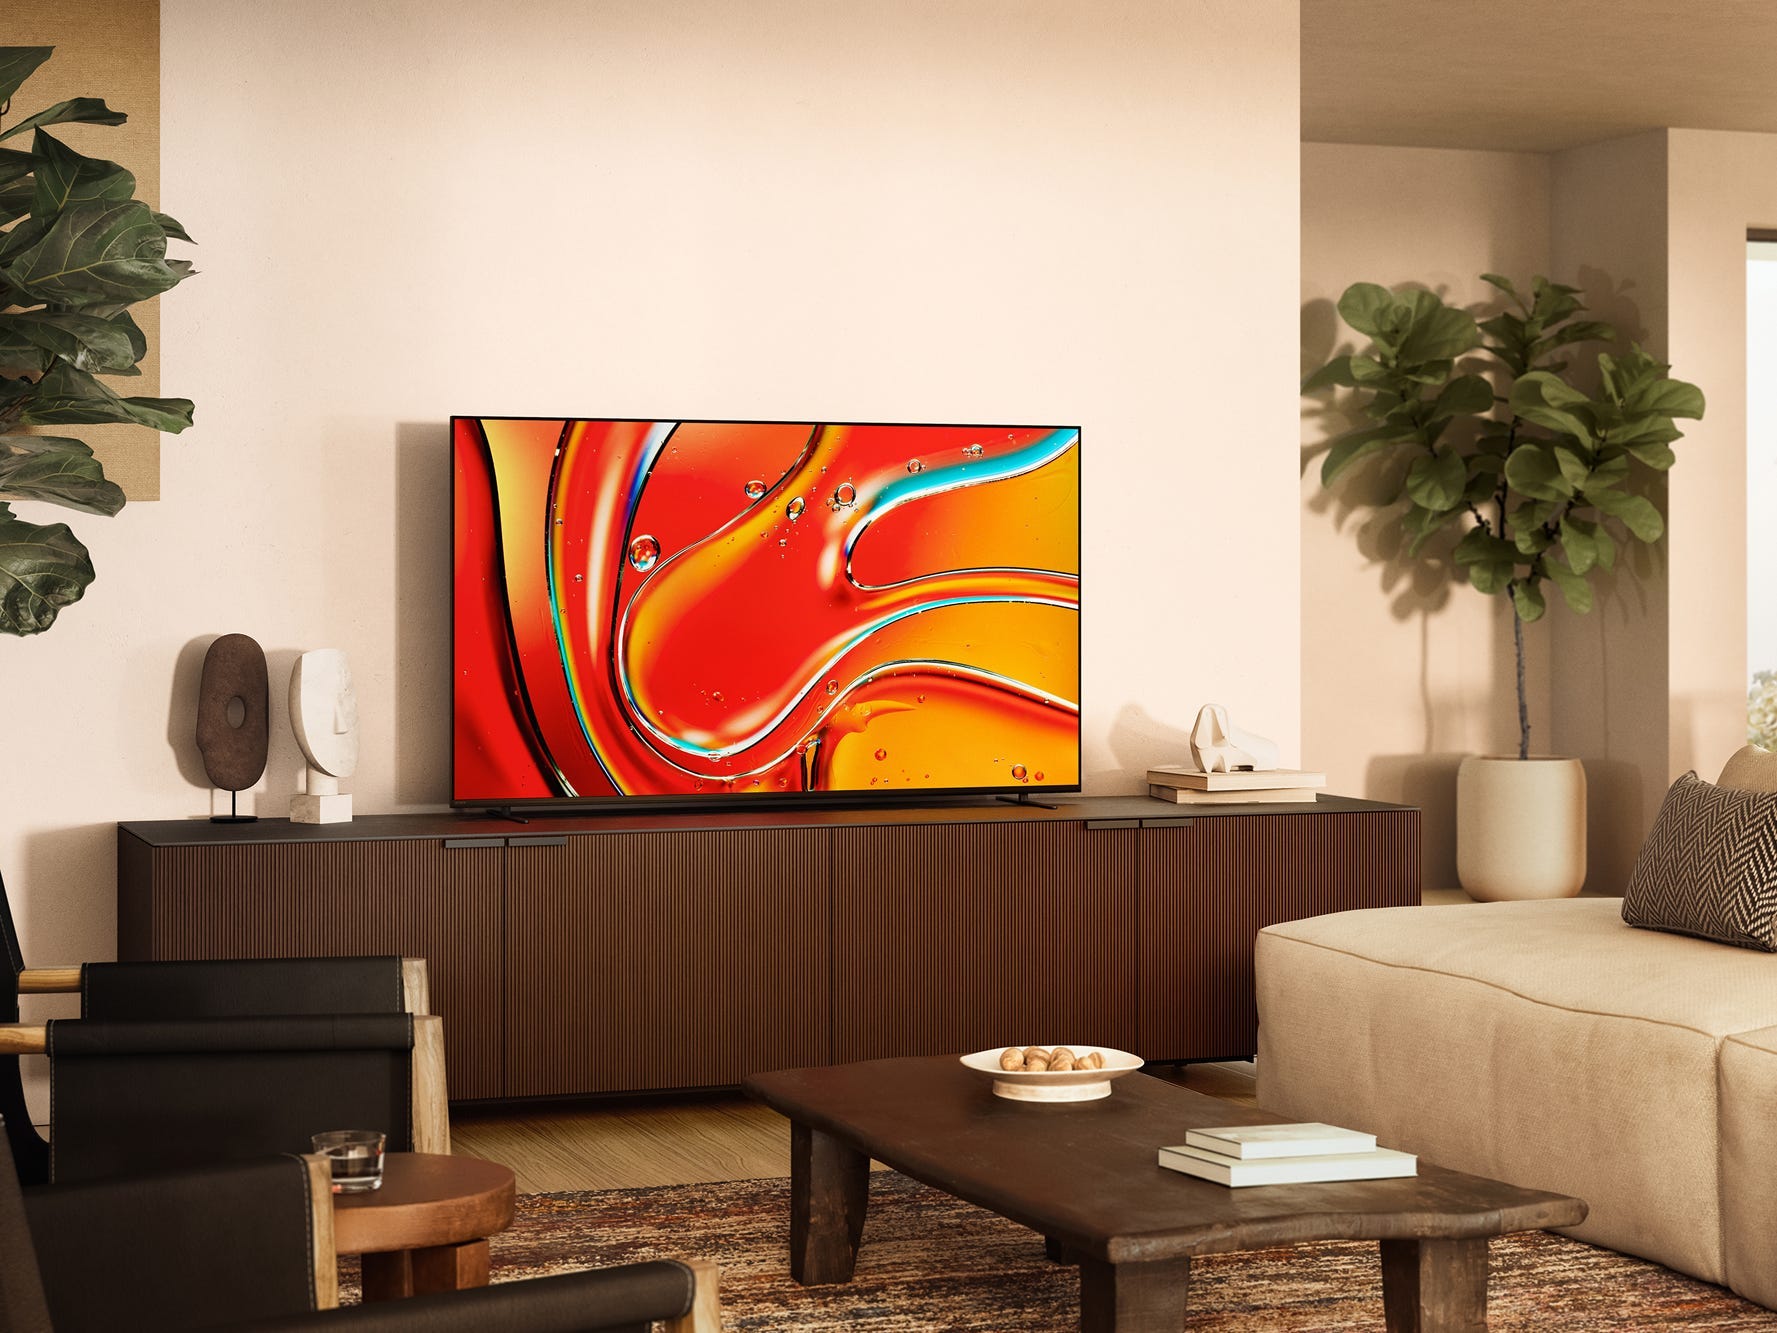 Ein Bravia 7 Mini LED-Fernseher auf einer Unterhaltungskonsole in einem Wohnzimmer.